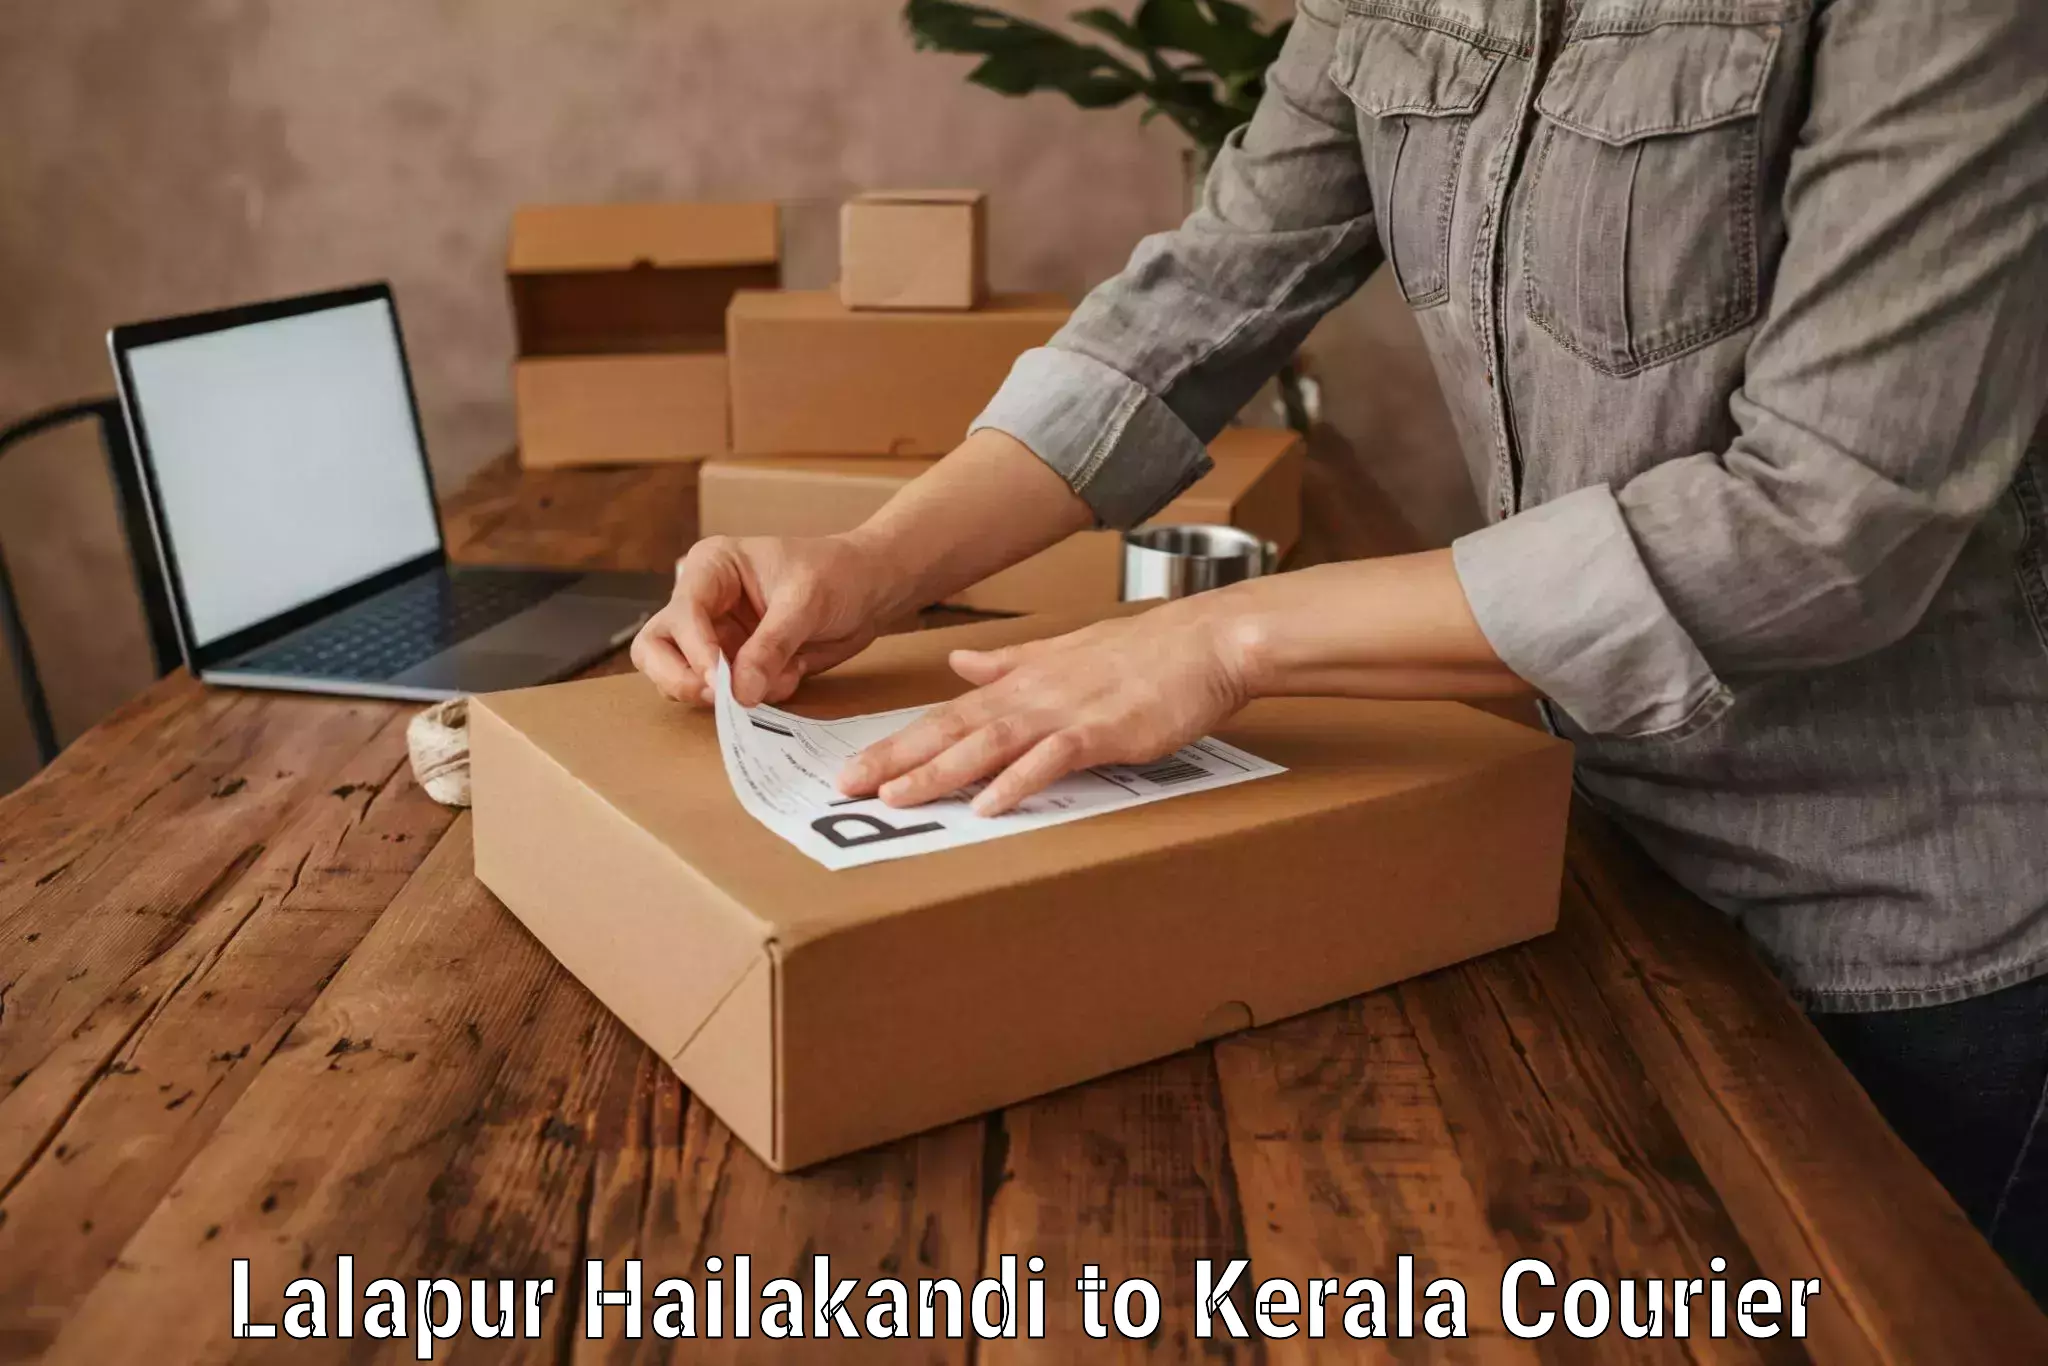 Hassle-free luggage shipping Lalapur Hailakandi to Kerala